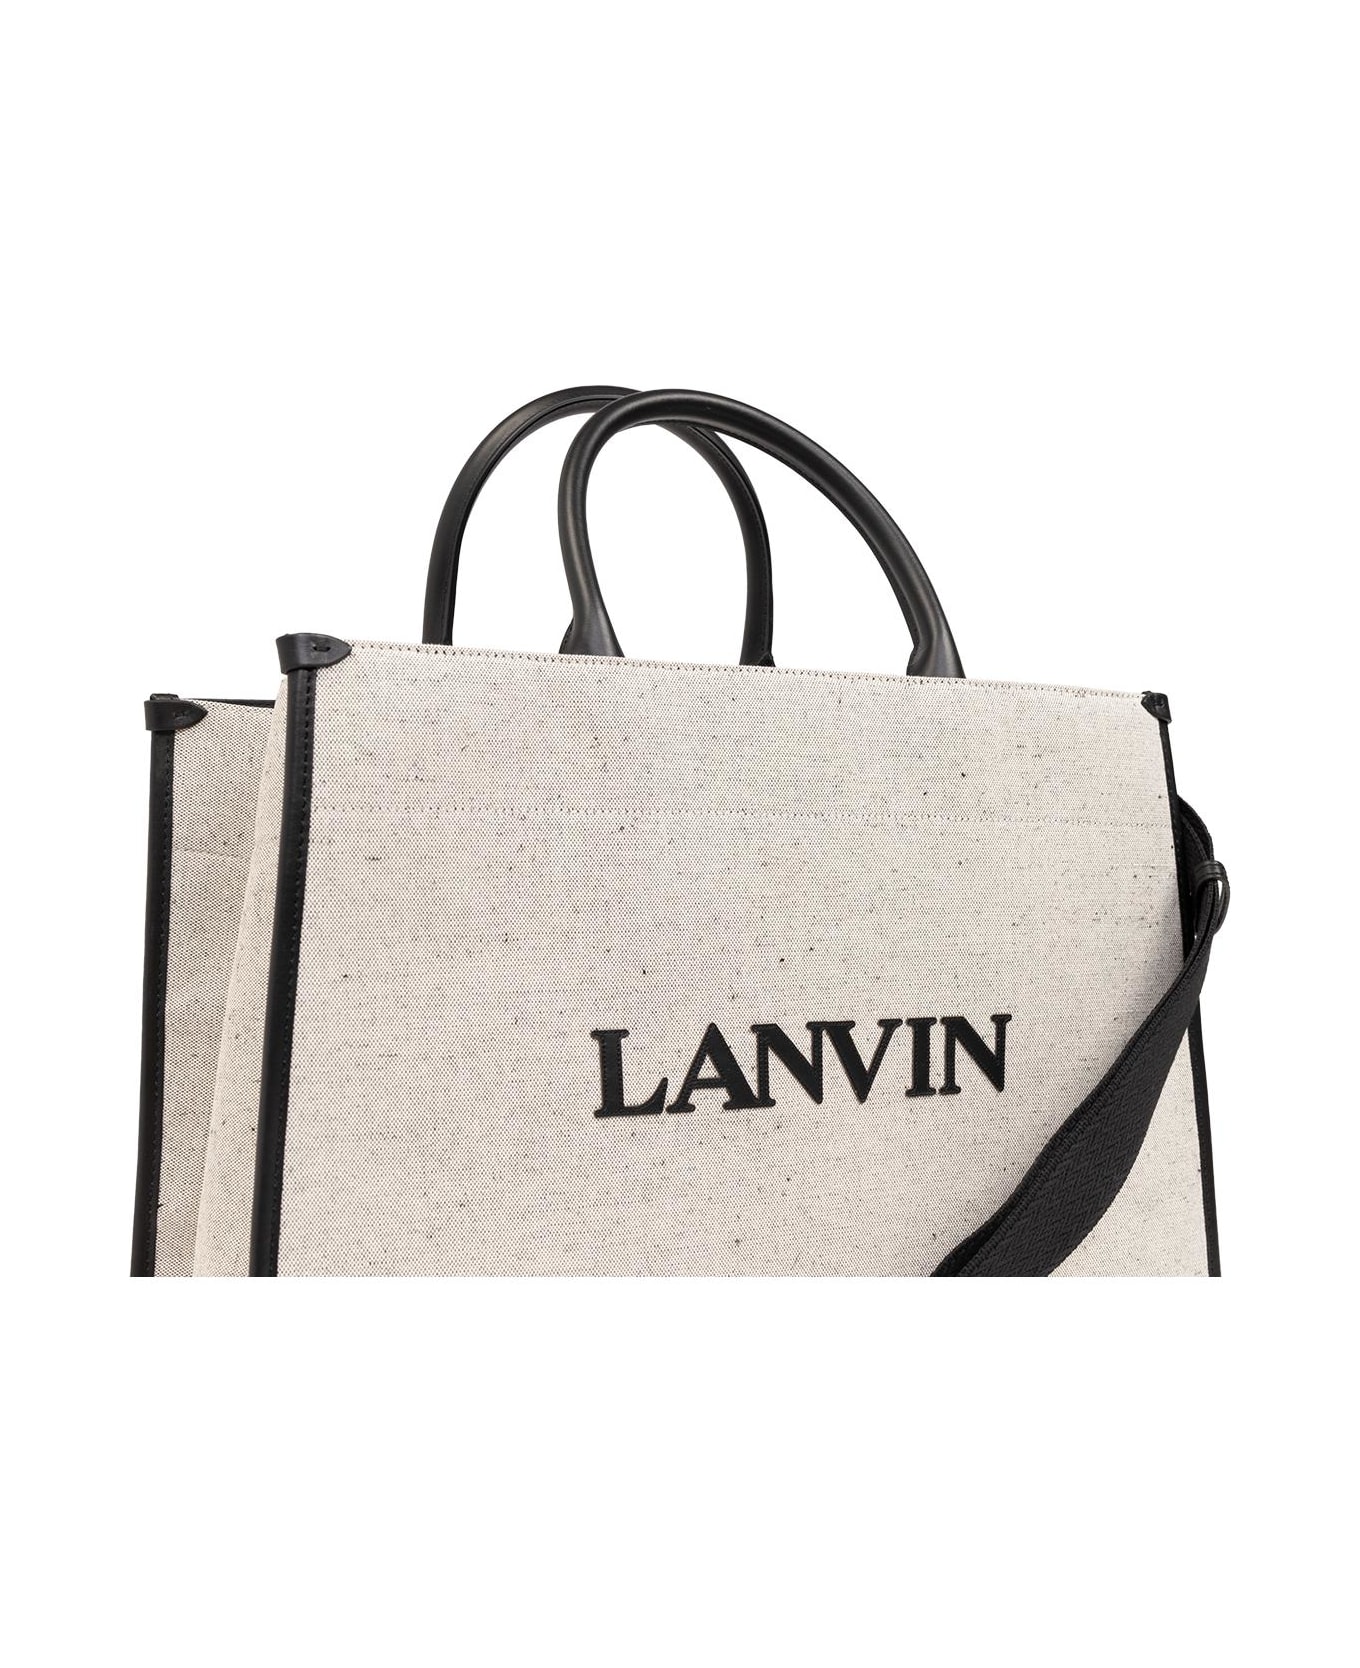 Lanvin 'mm' Shopper Bag - Beige Black